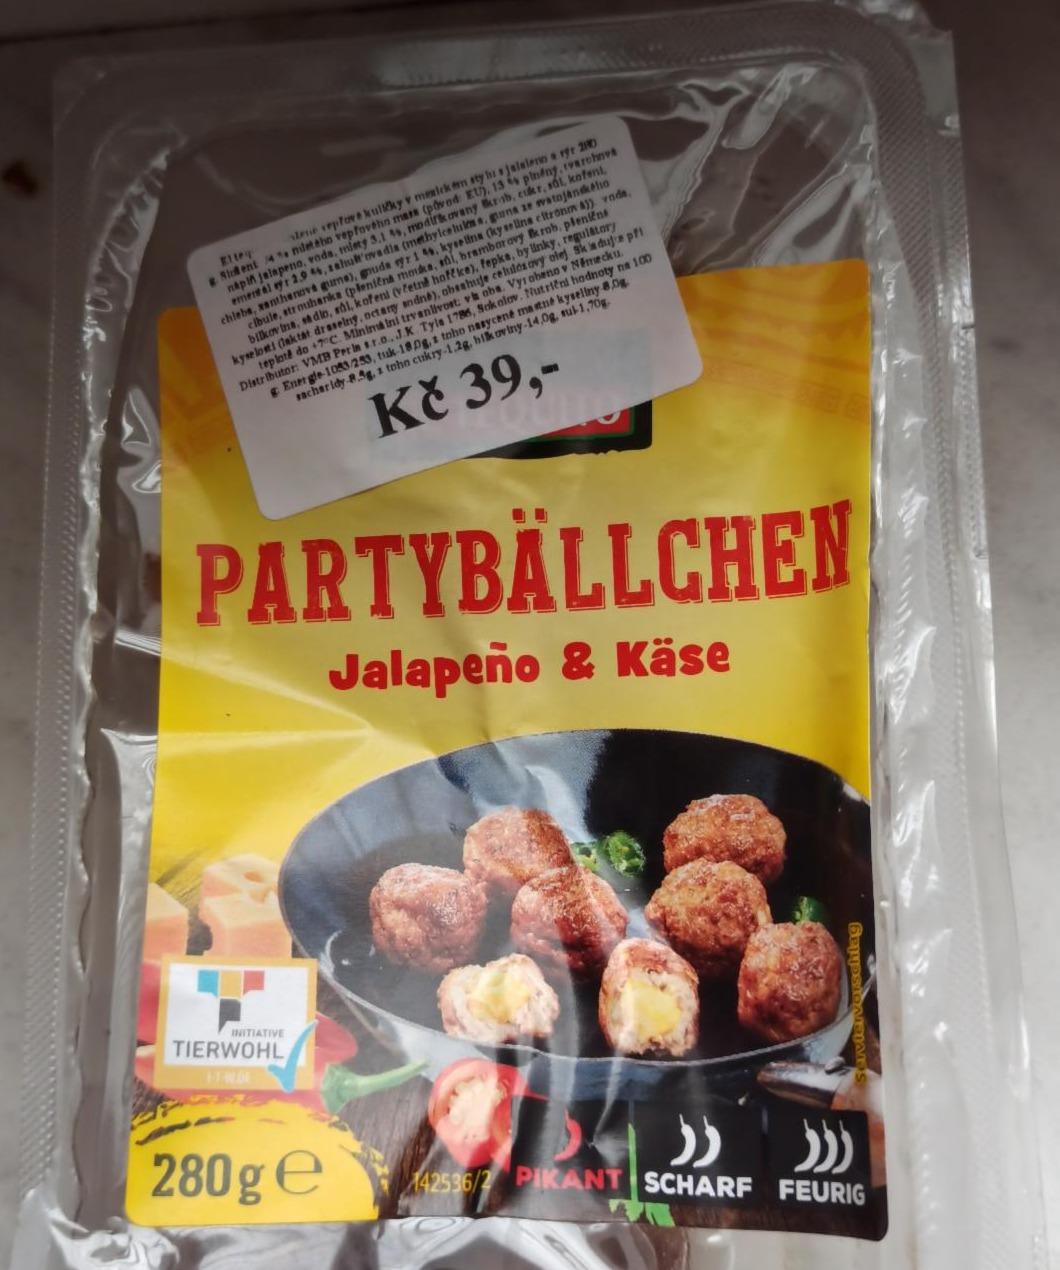 kJ - nutriční Partybällchen hodnoty Jalapeño & Käse kalorie, a